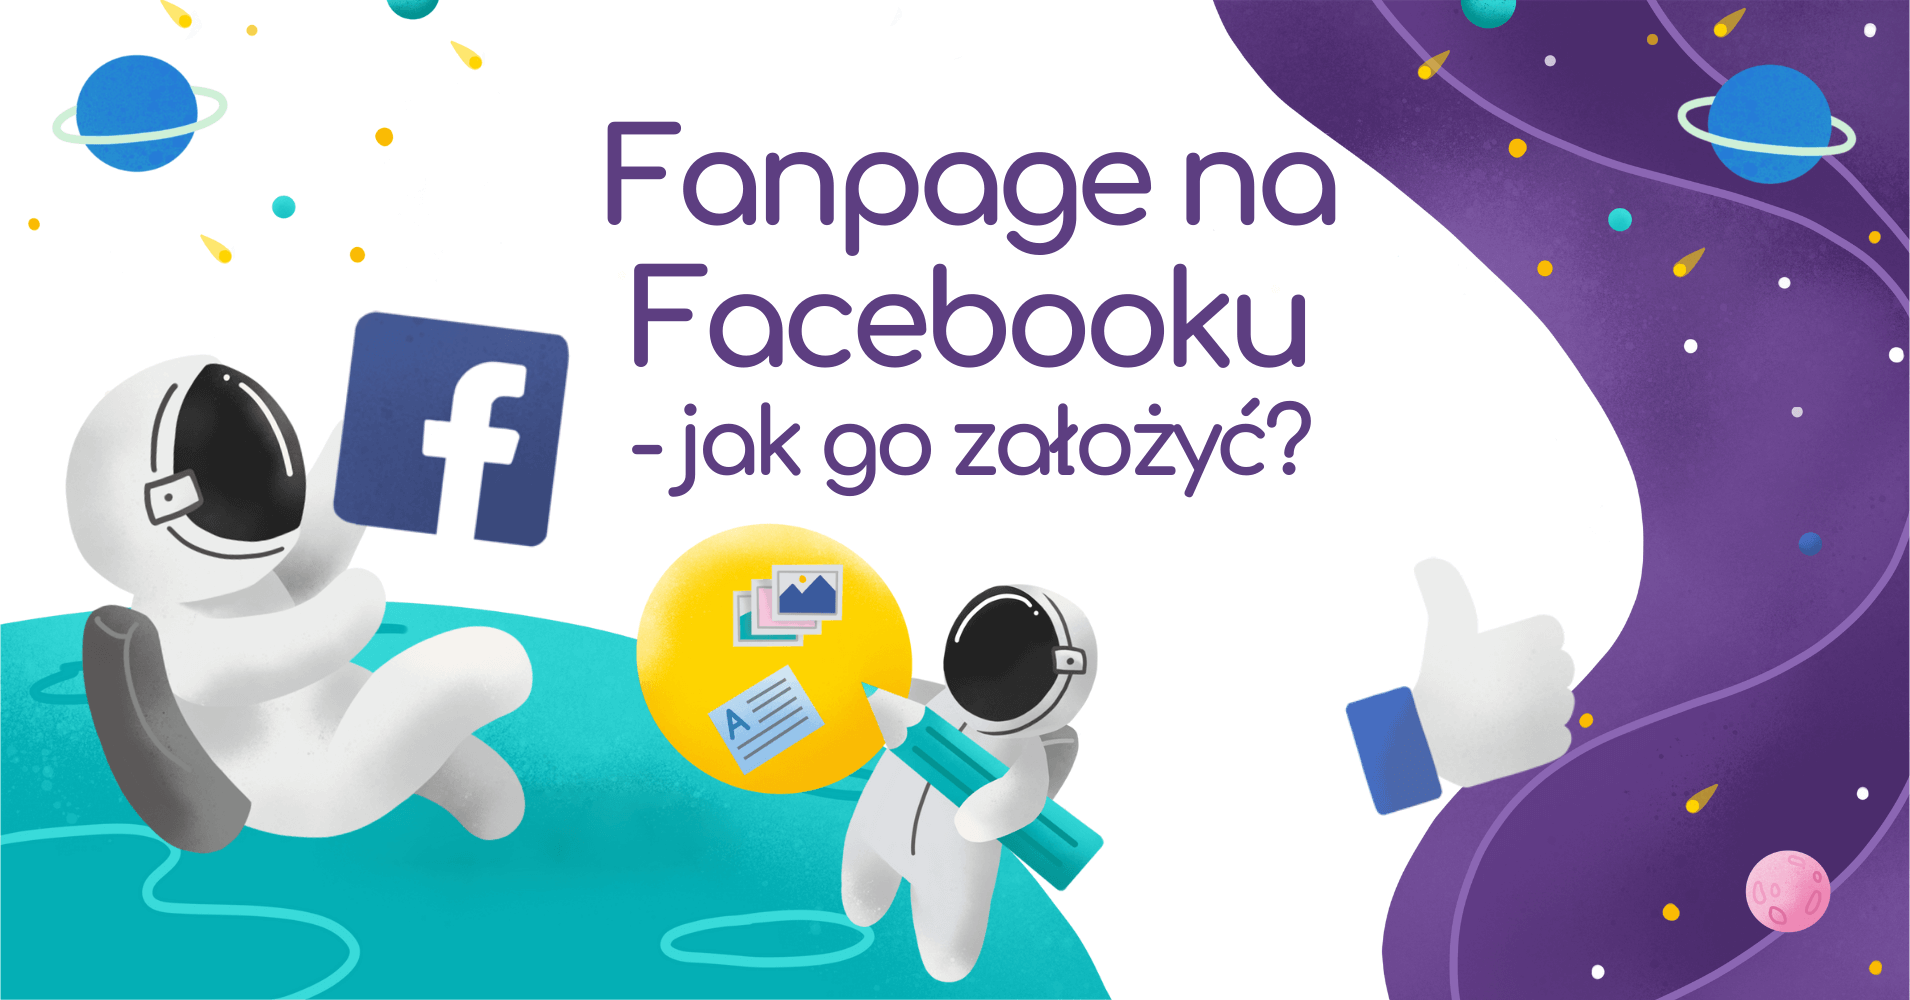 Jak założyć i prowadzić Fanpage na Facebooku?